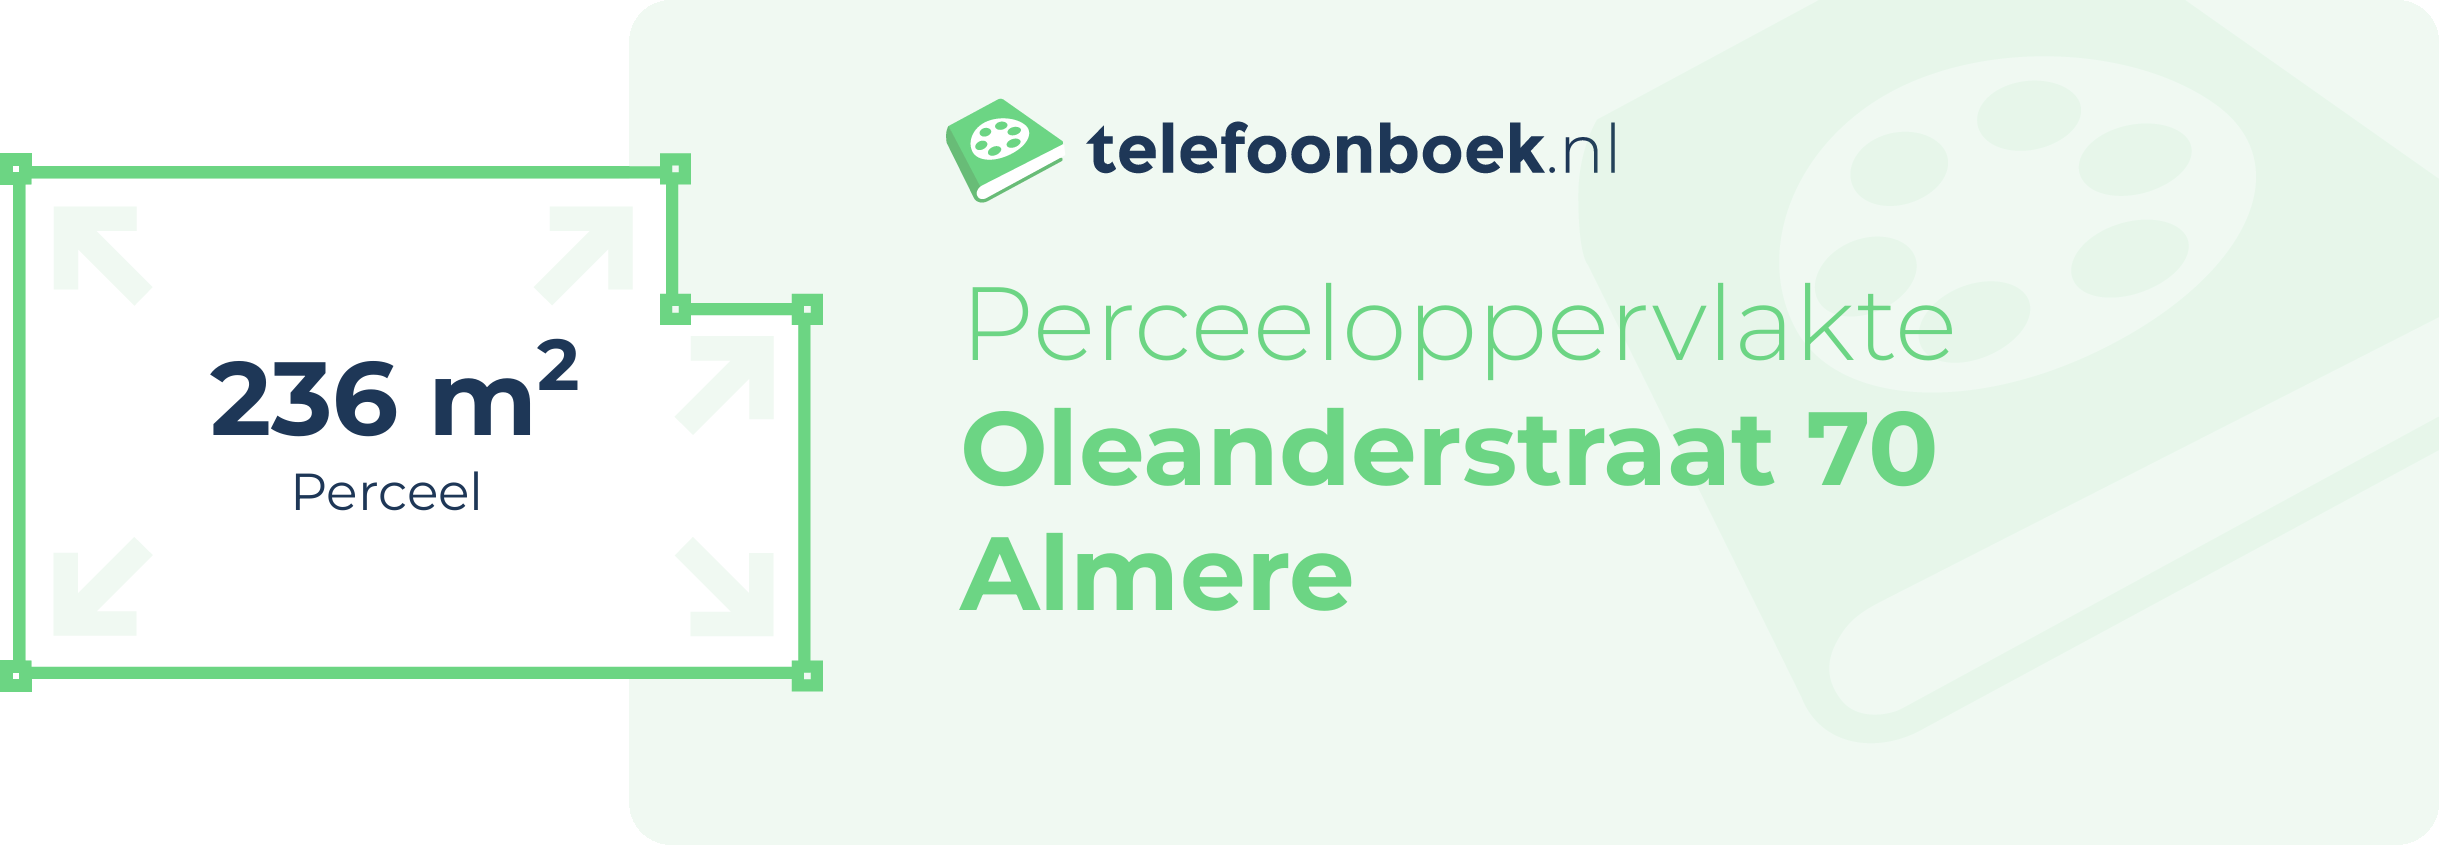 Perceeloppervlakte Oleanderstraat 70 Almere